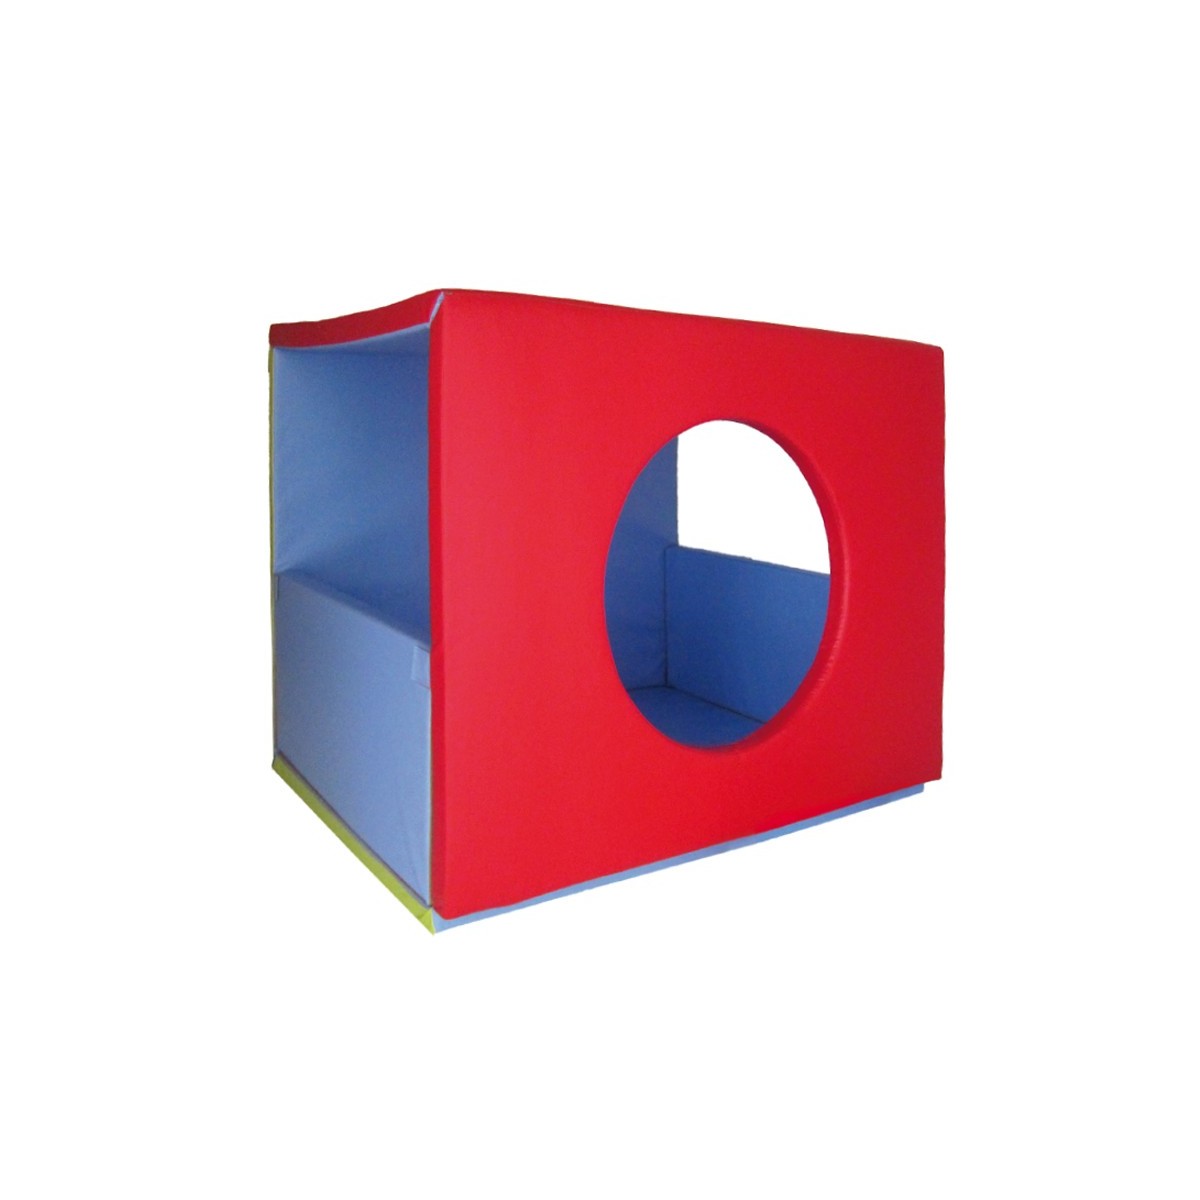 Cube magique Sumo Didactic de motricité pour enfants. Matériel de motricité cube magique Sumo Didactic pour crèche et écoles